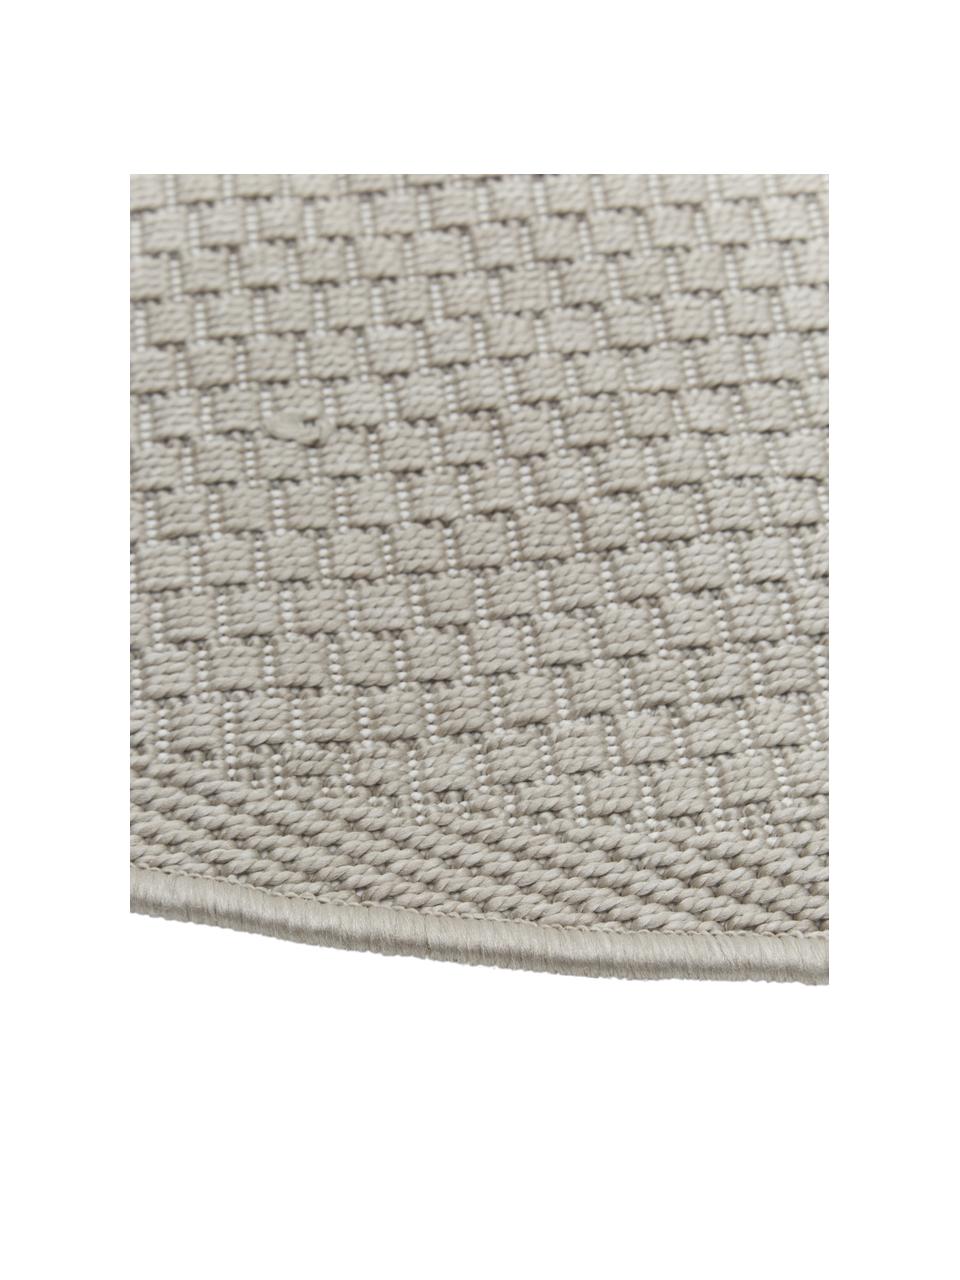 Oválný vnitřní / venkovní koberec Toronto, 100 % polypropylen, Béžová, Š 200 cm, D 300 cm (velikost L)